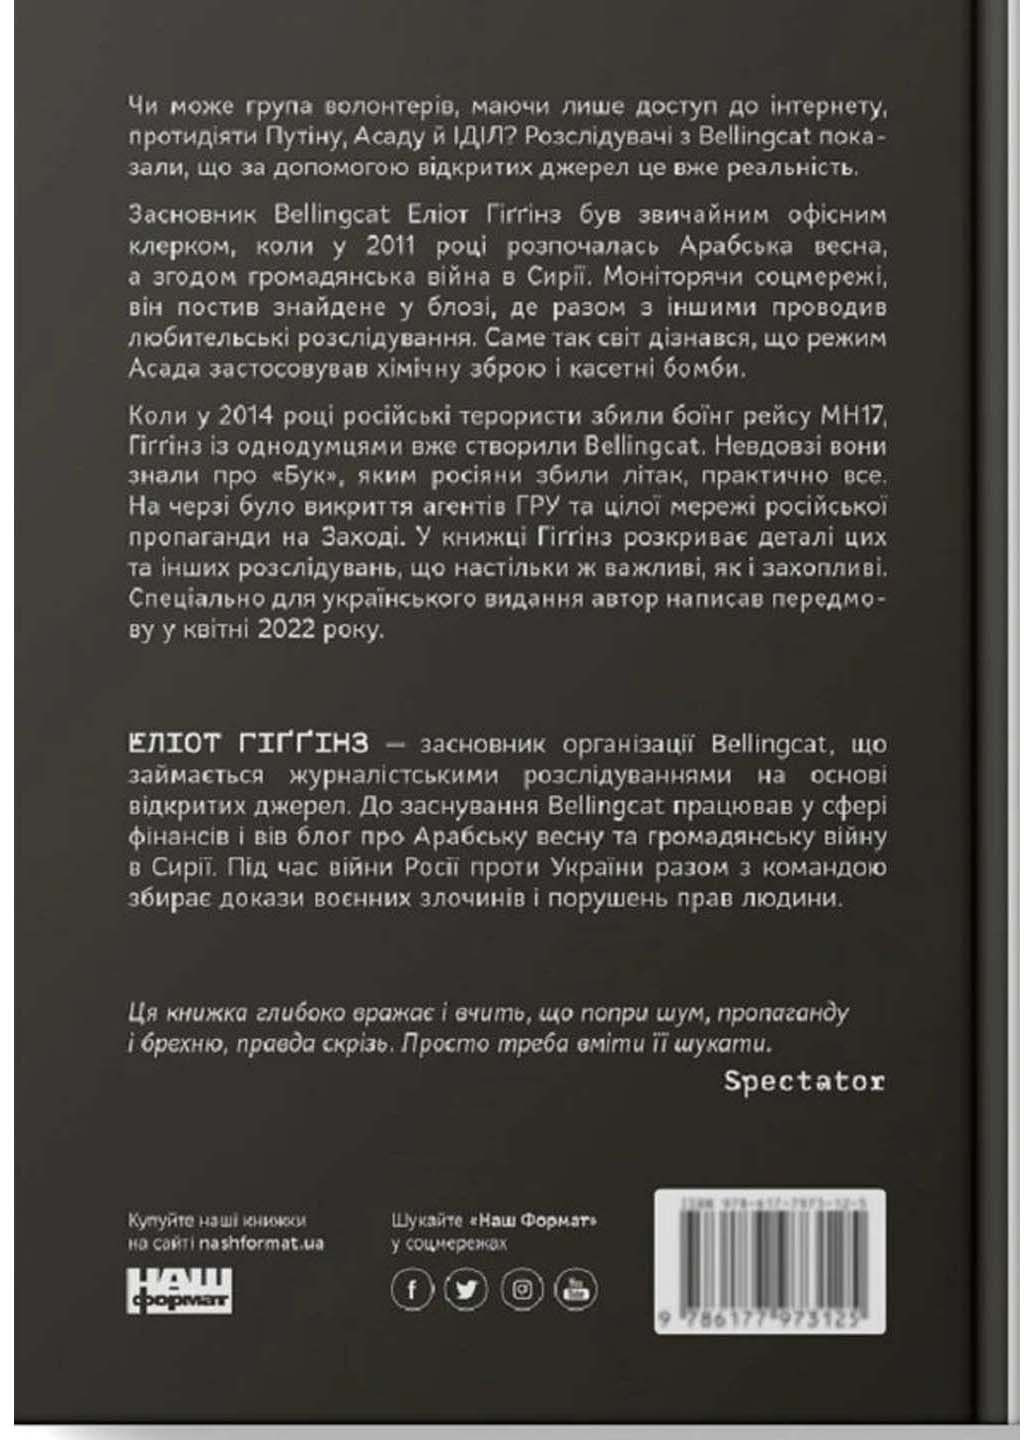 Книга Мі - Bellingcat. Онлайн-розслідування міжнародних злочинів та інформаційна війна з Росією 2021р 242 с Наш Формат (293060589)